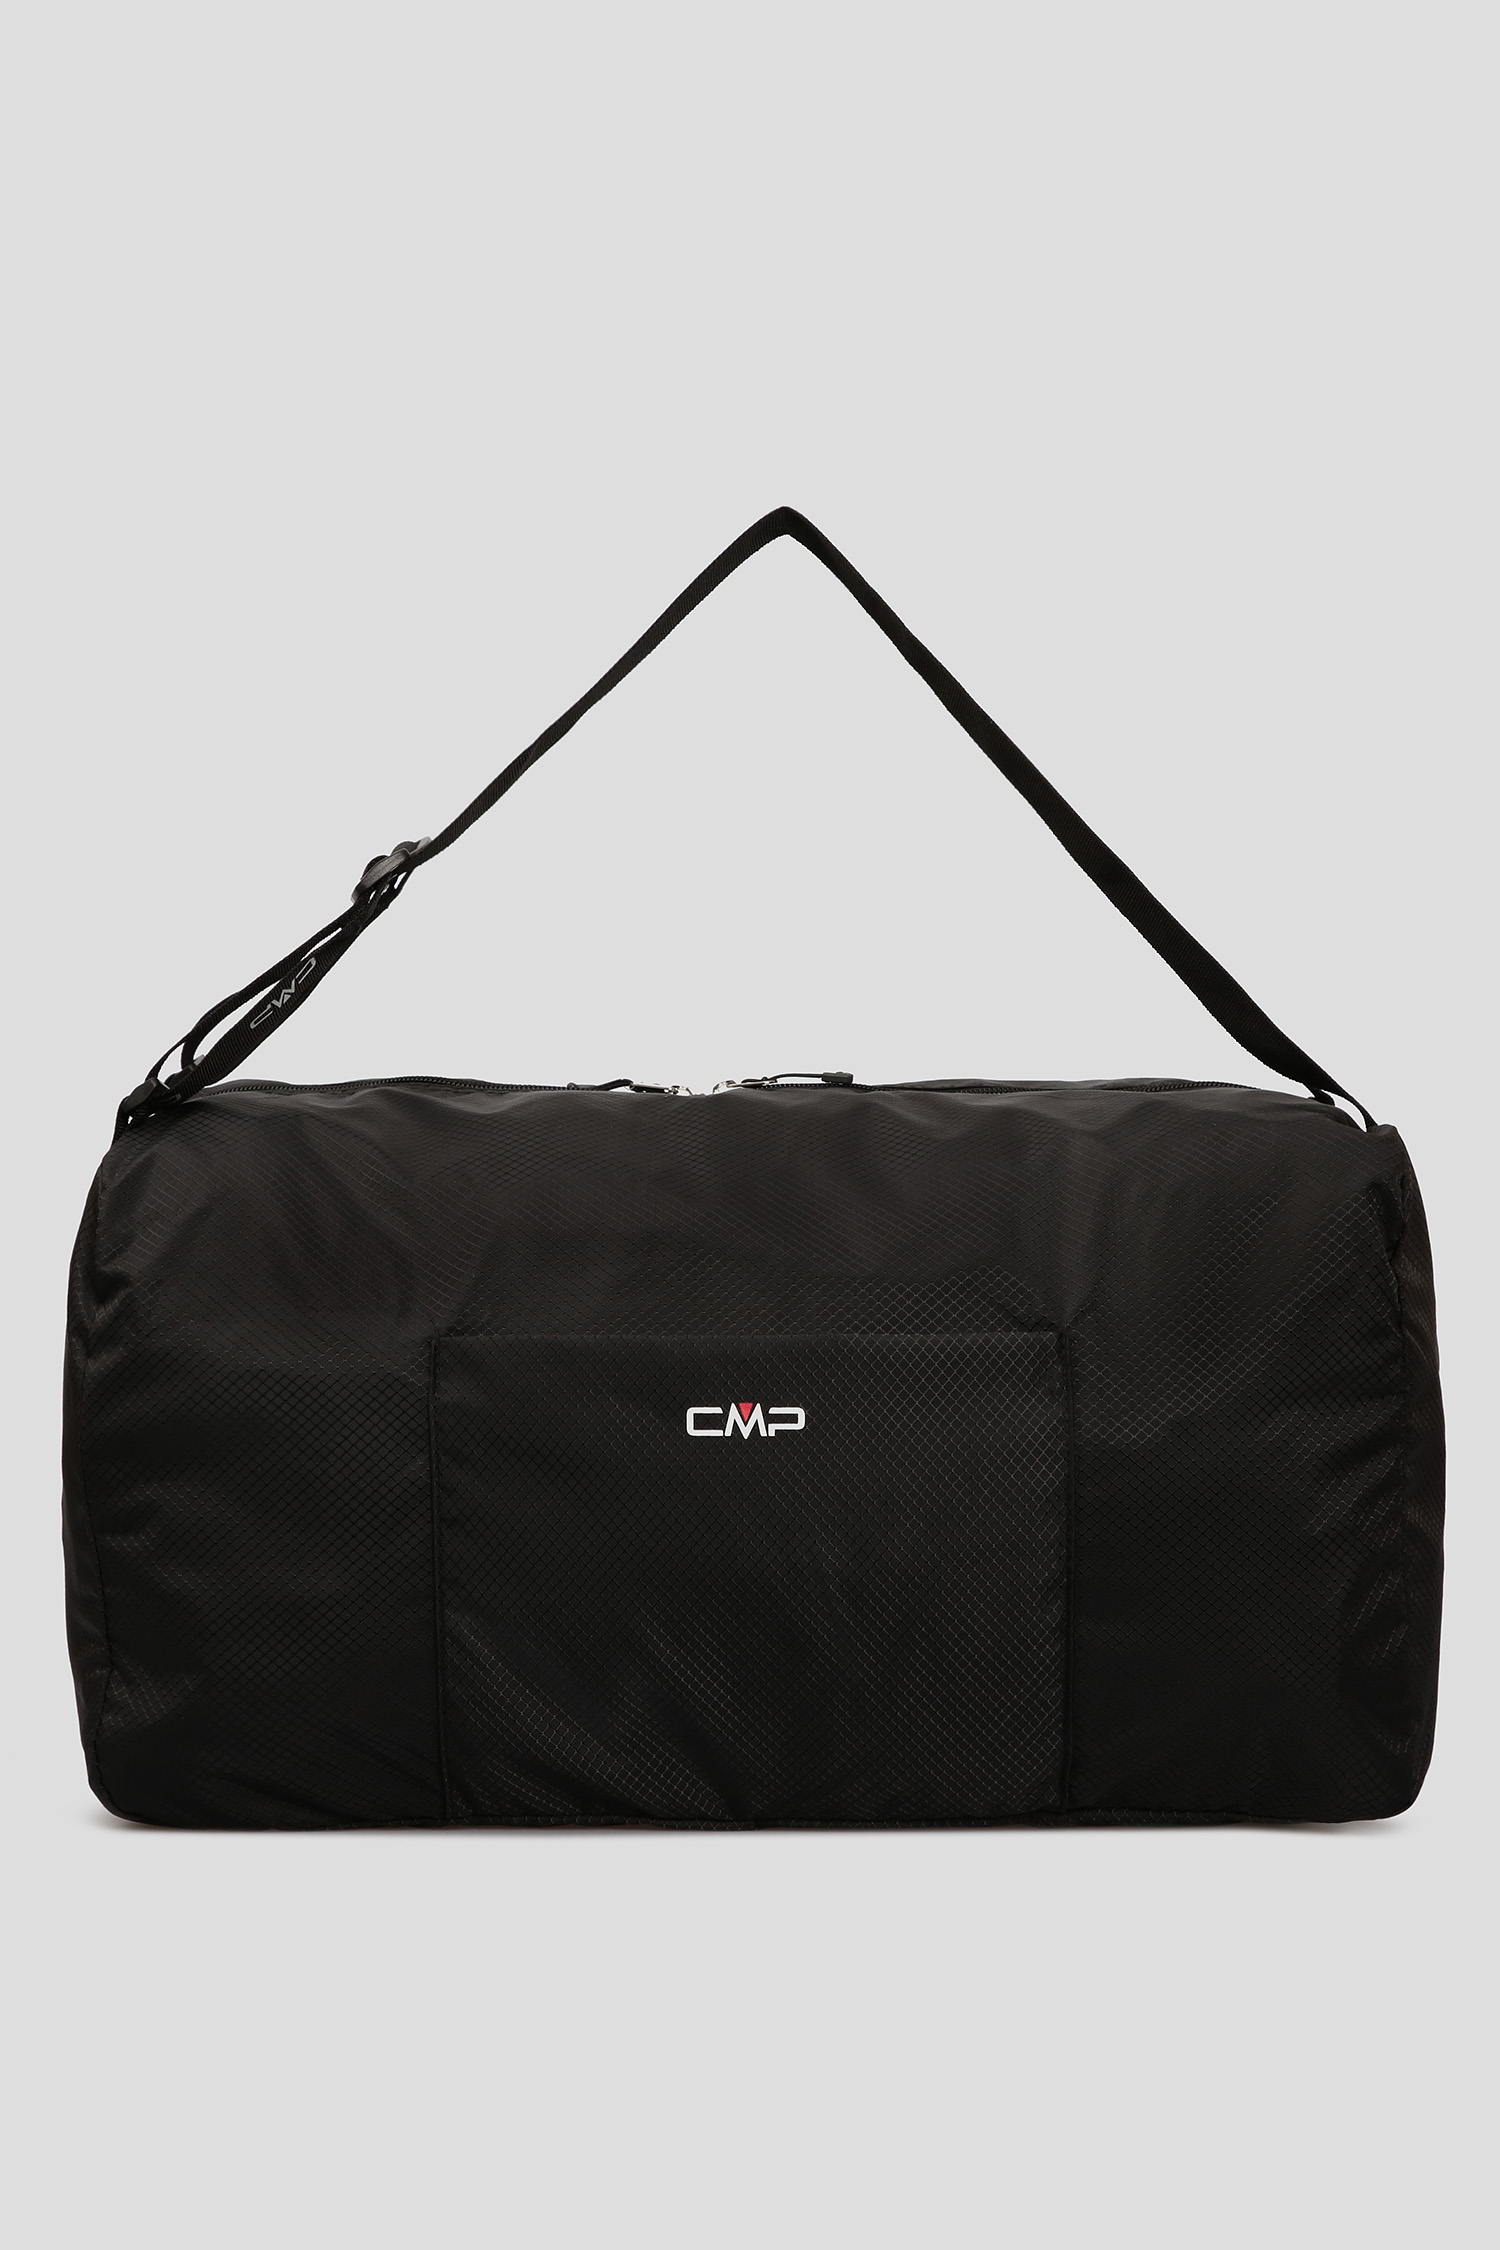 Чорна спортивна сумка FOLDABLE GYM 1